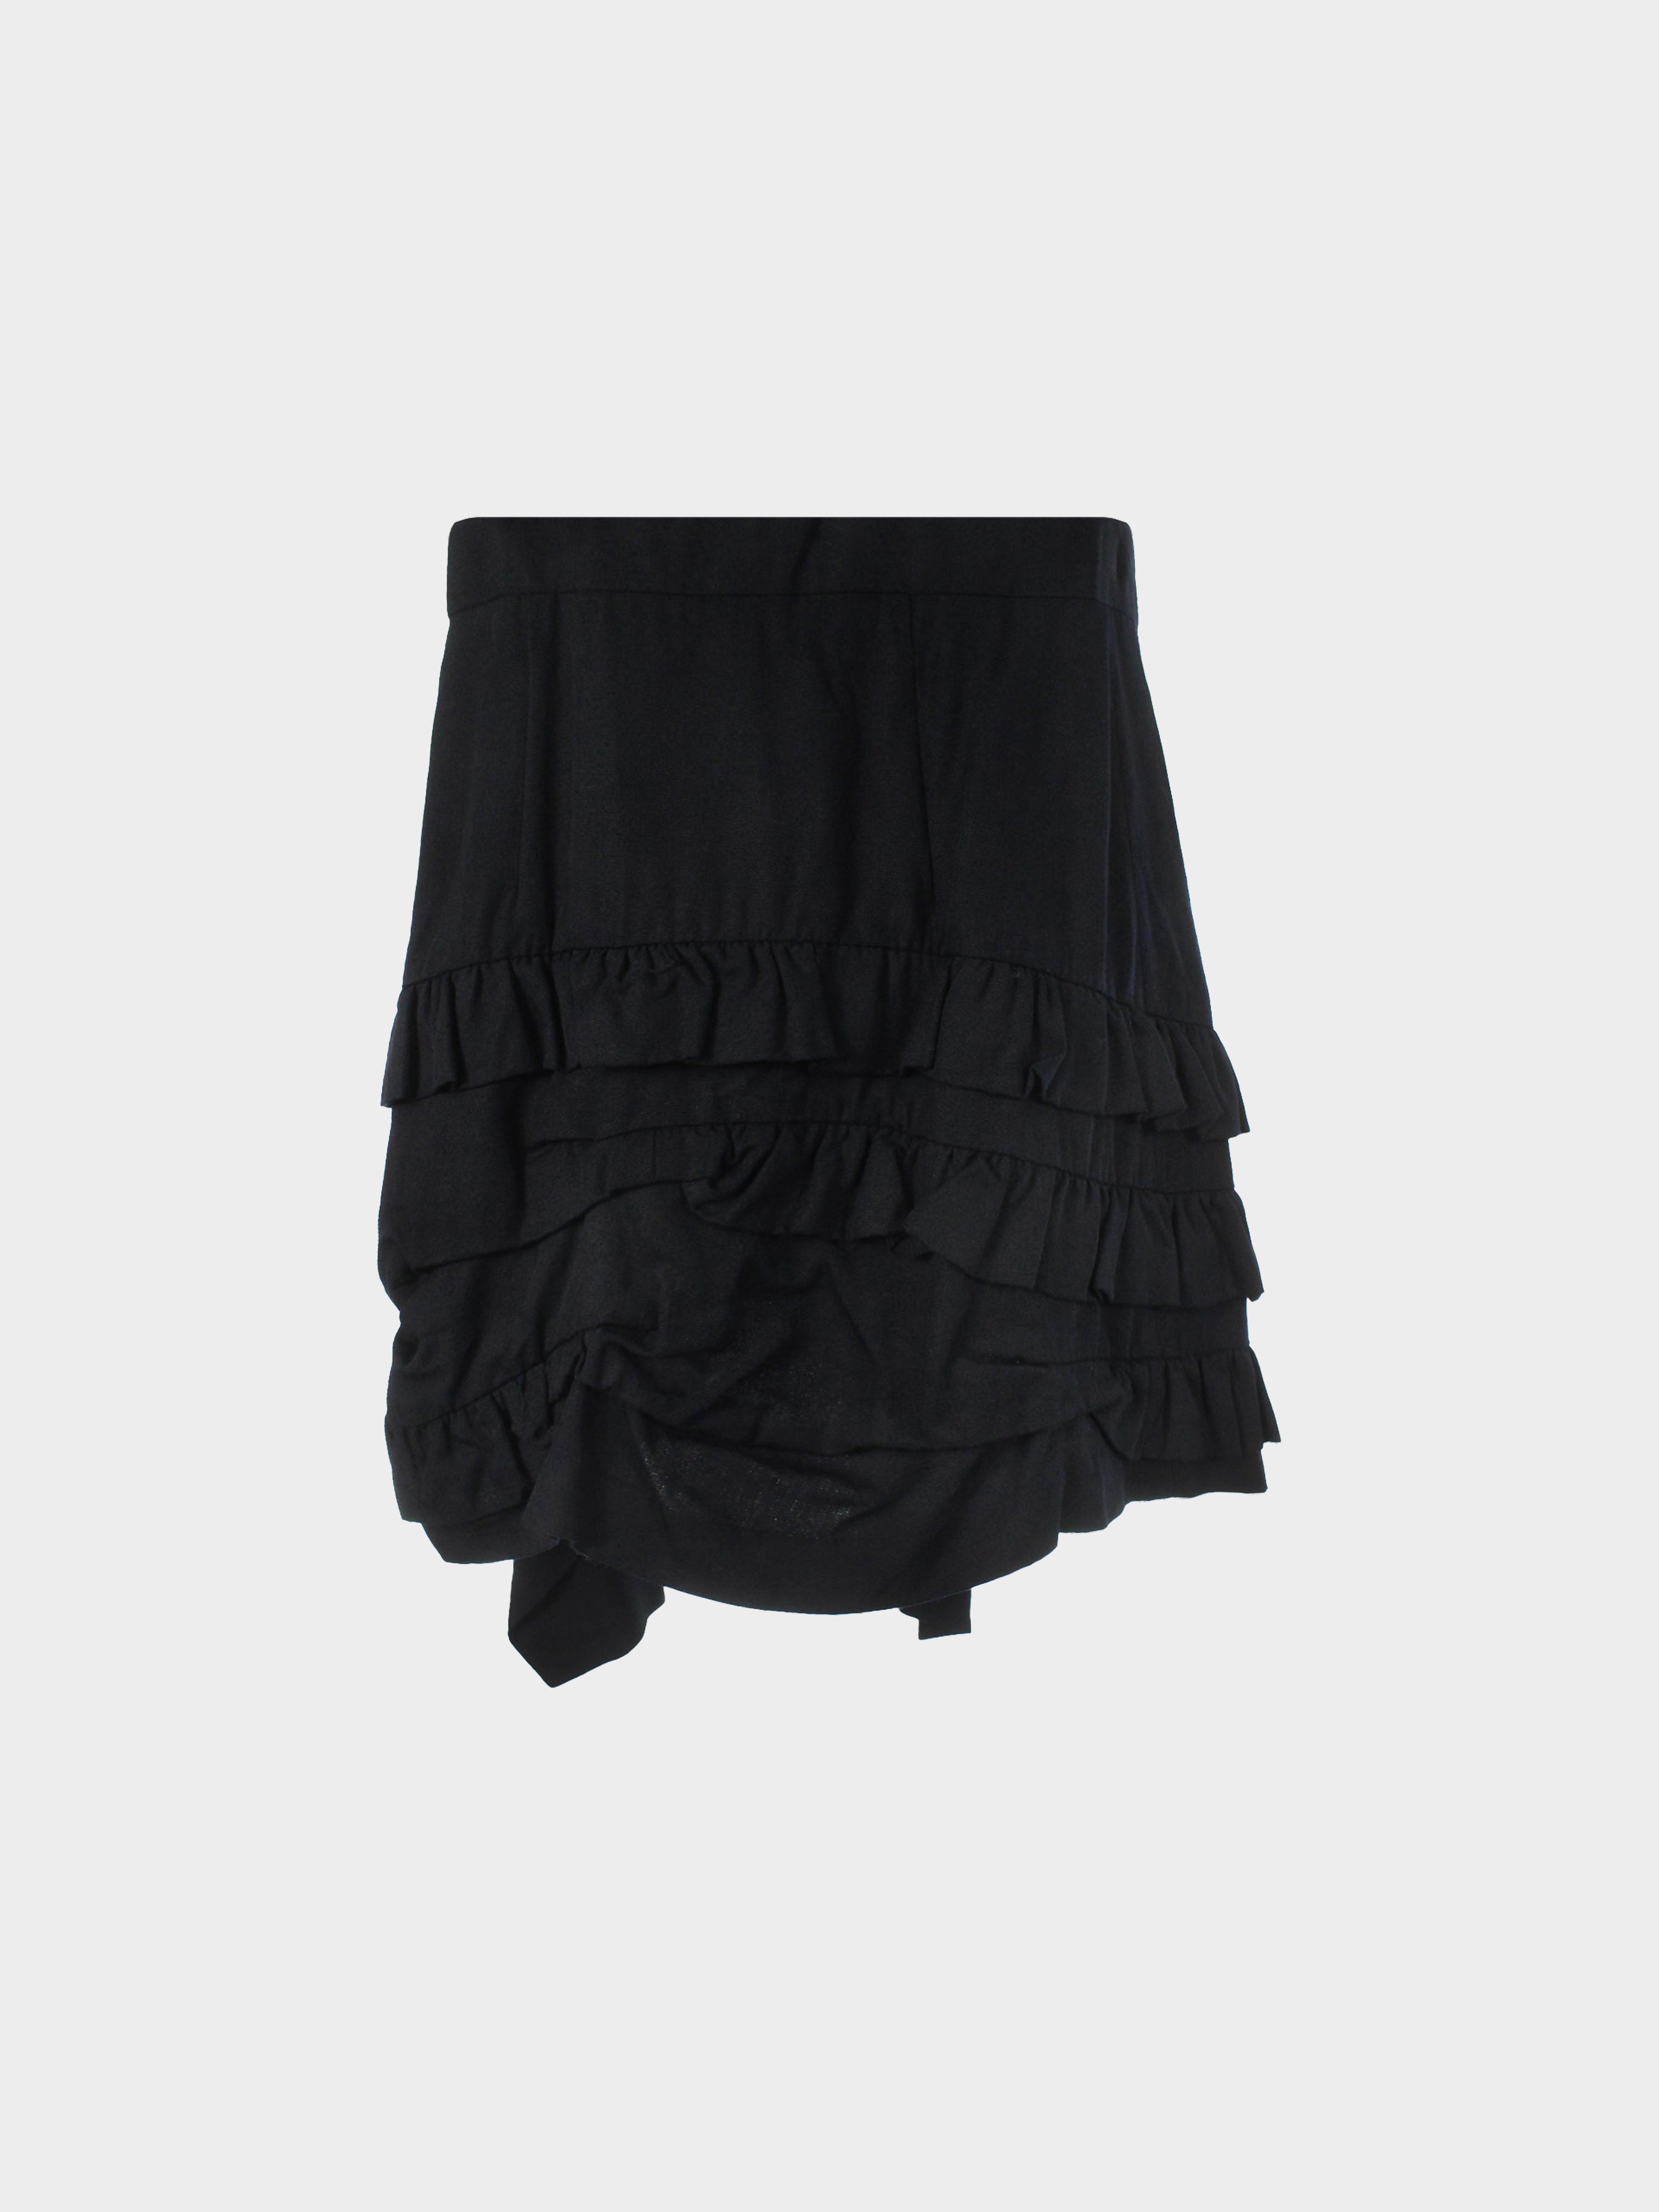 Comme des Garçons SS 1995 Black Ruffle Skirt